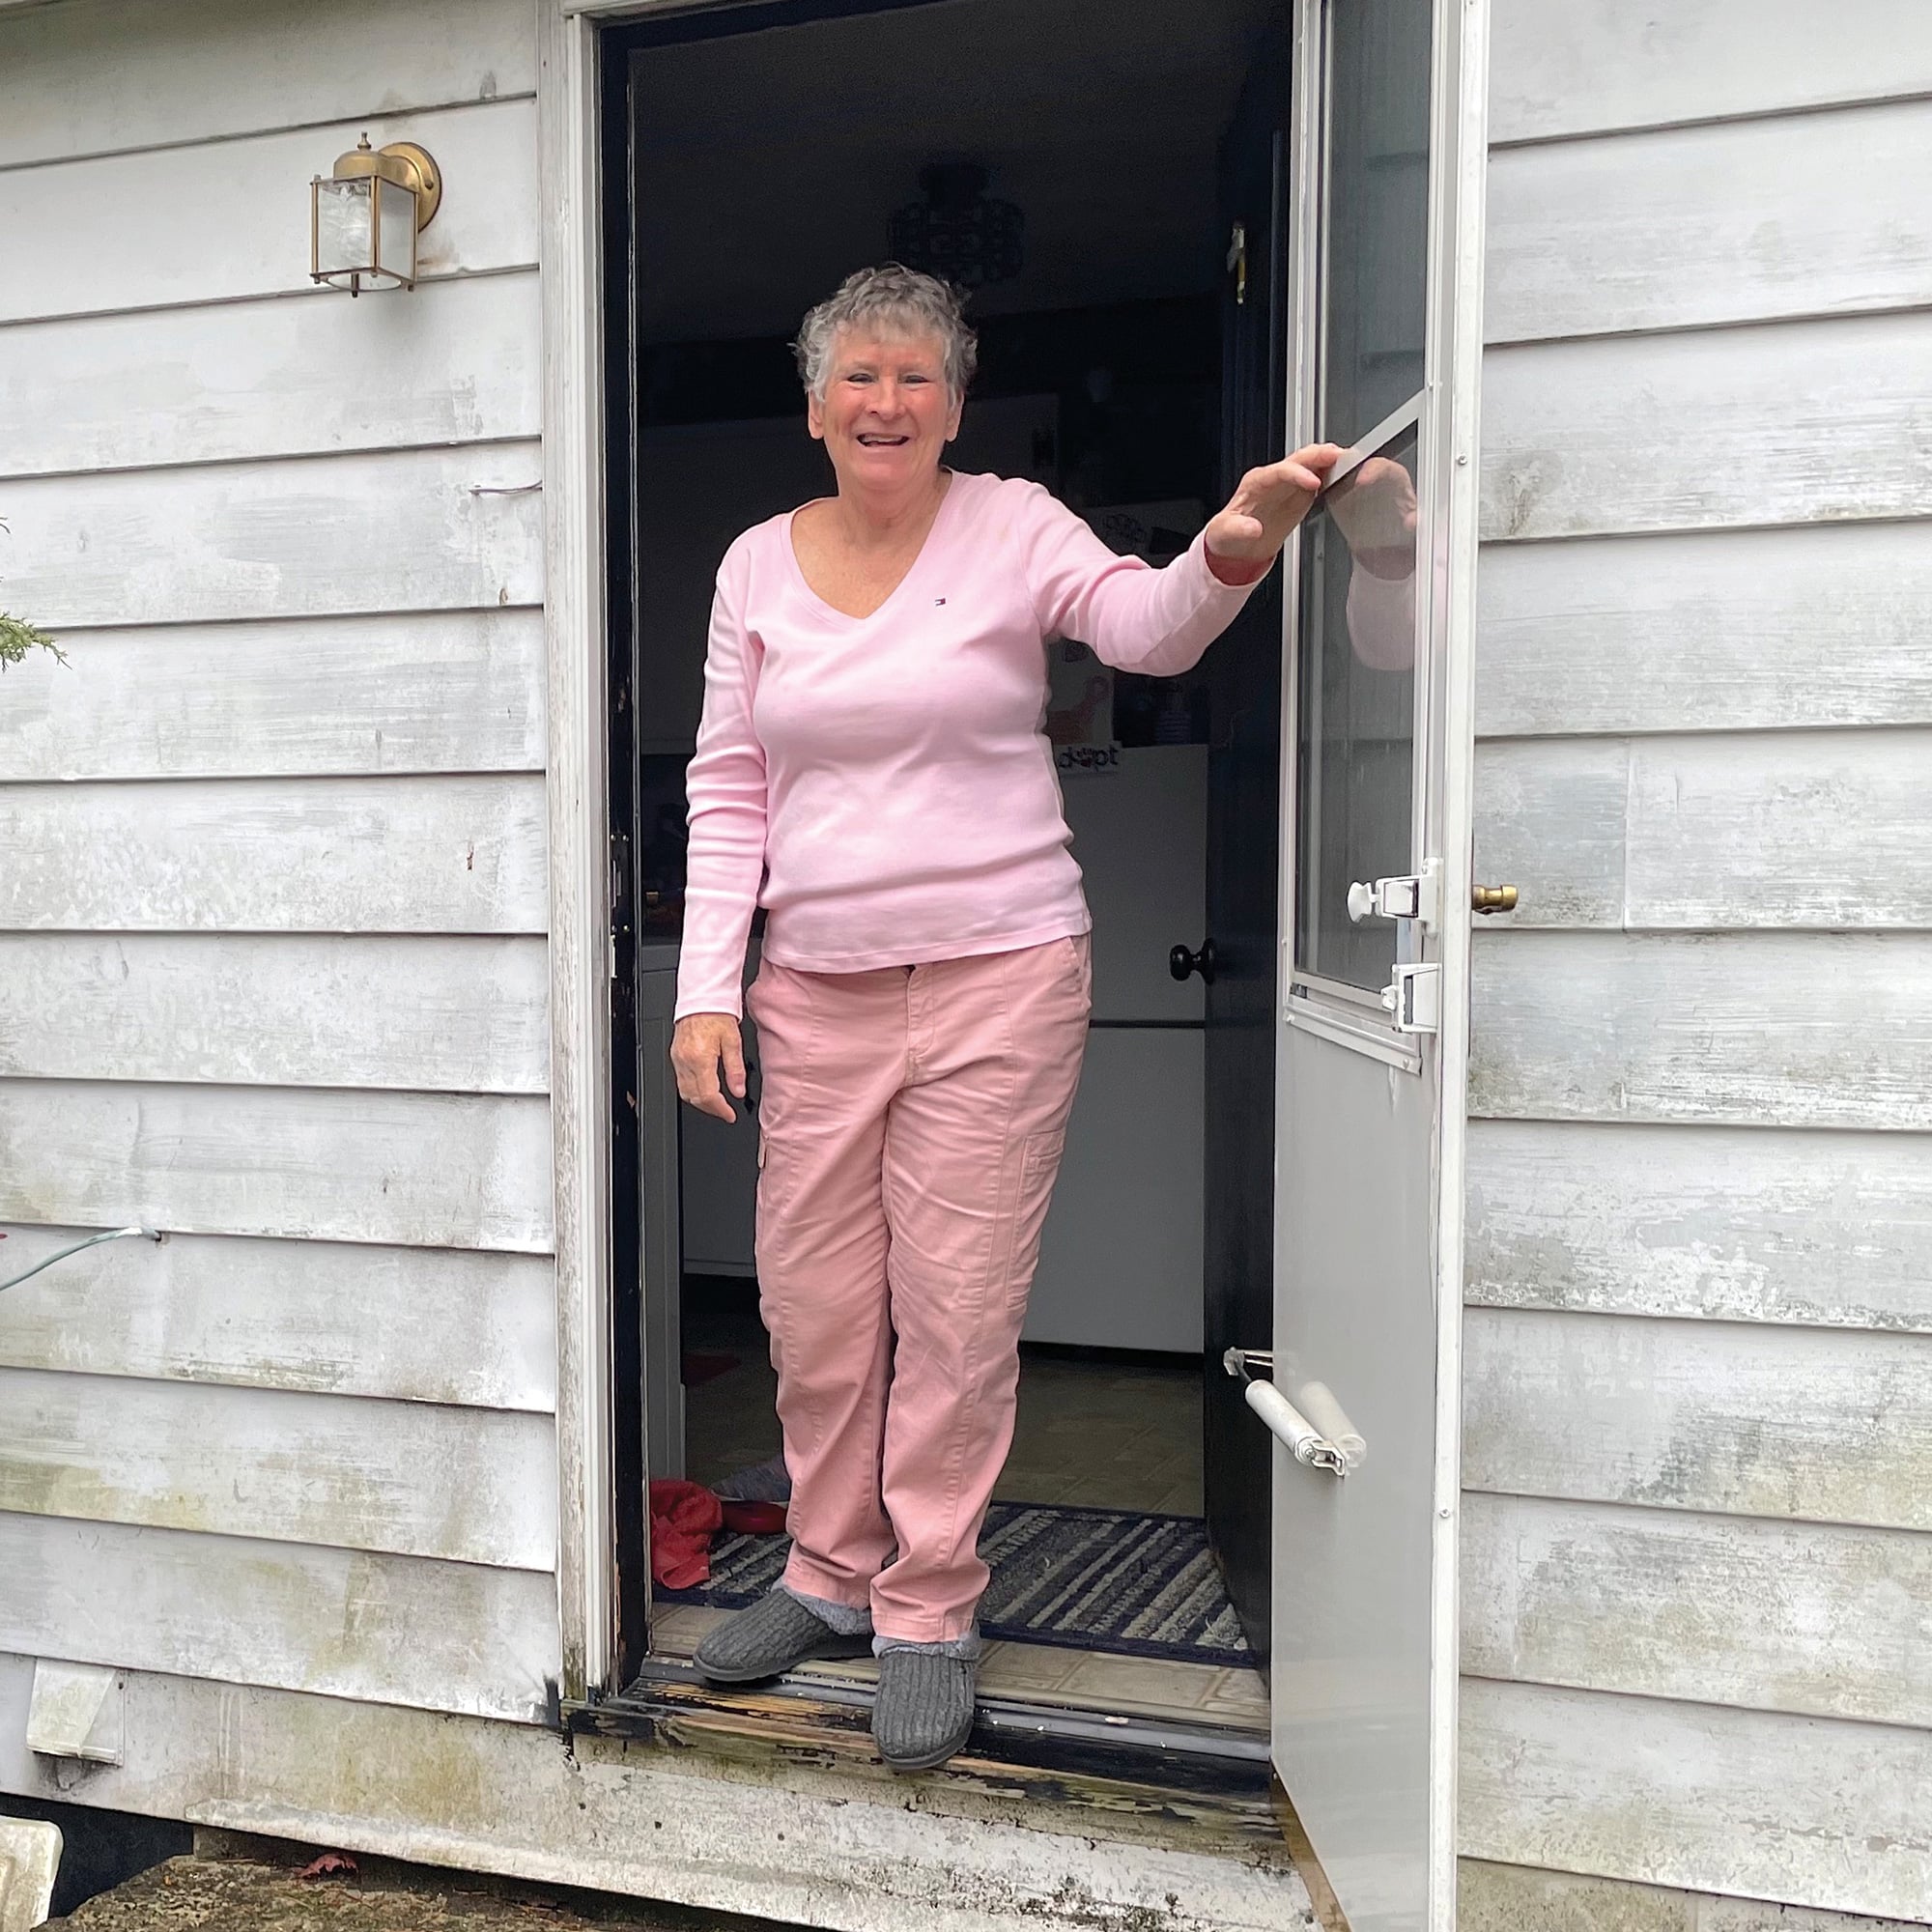 Barbara Vanhoose, 73, greets Denison journalists at her back door in rural Licking County.